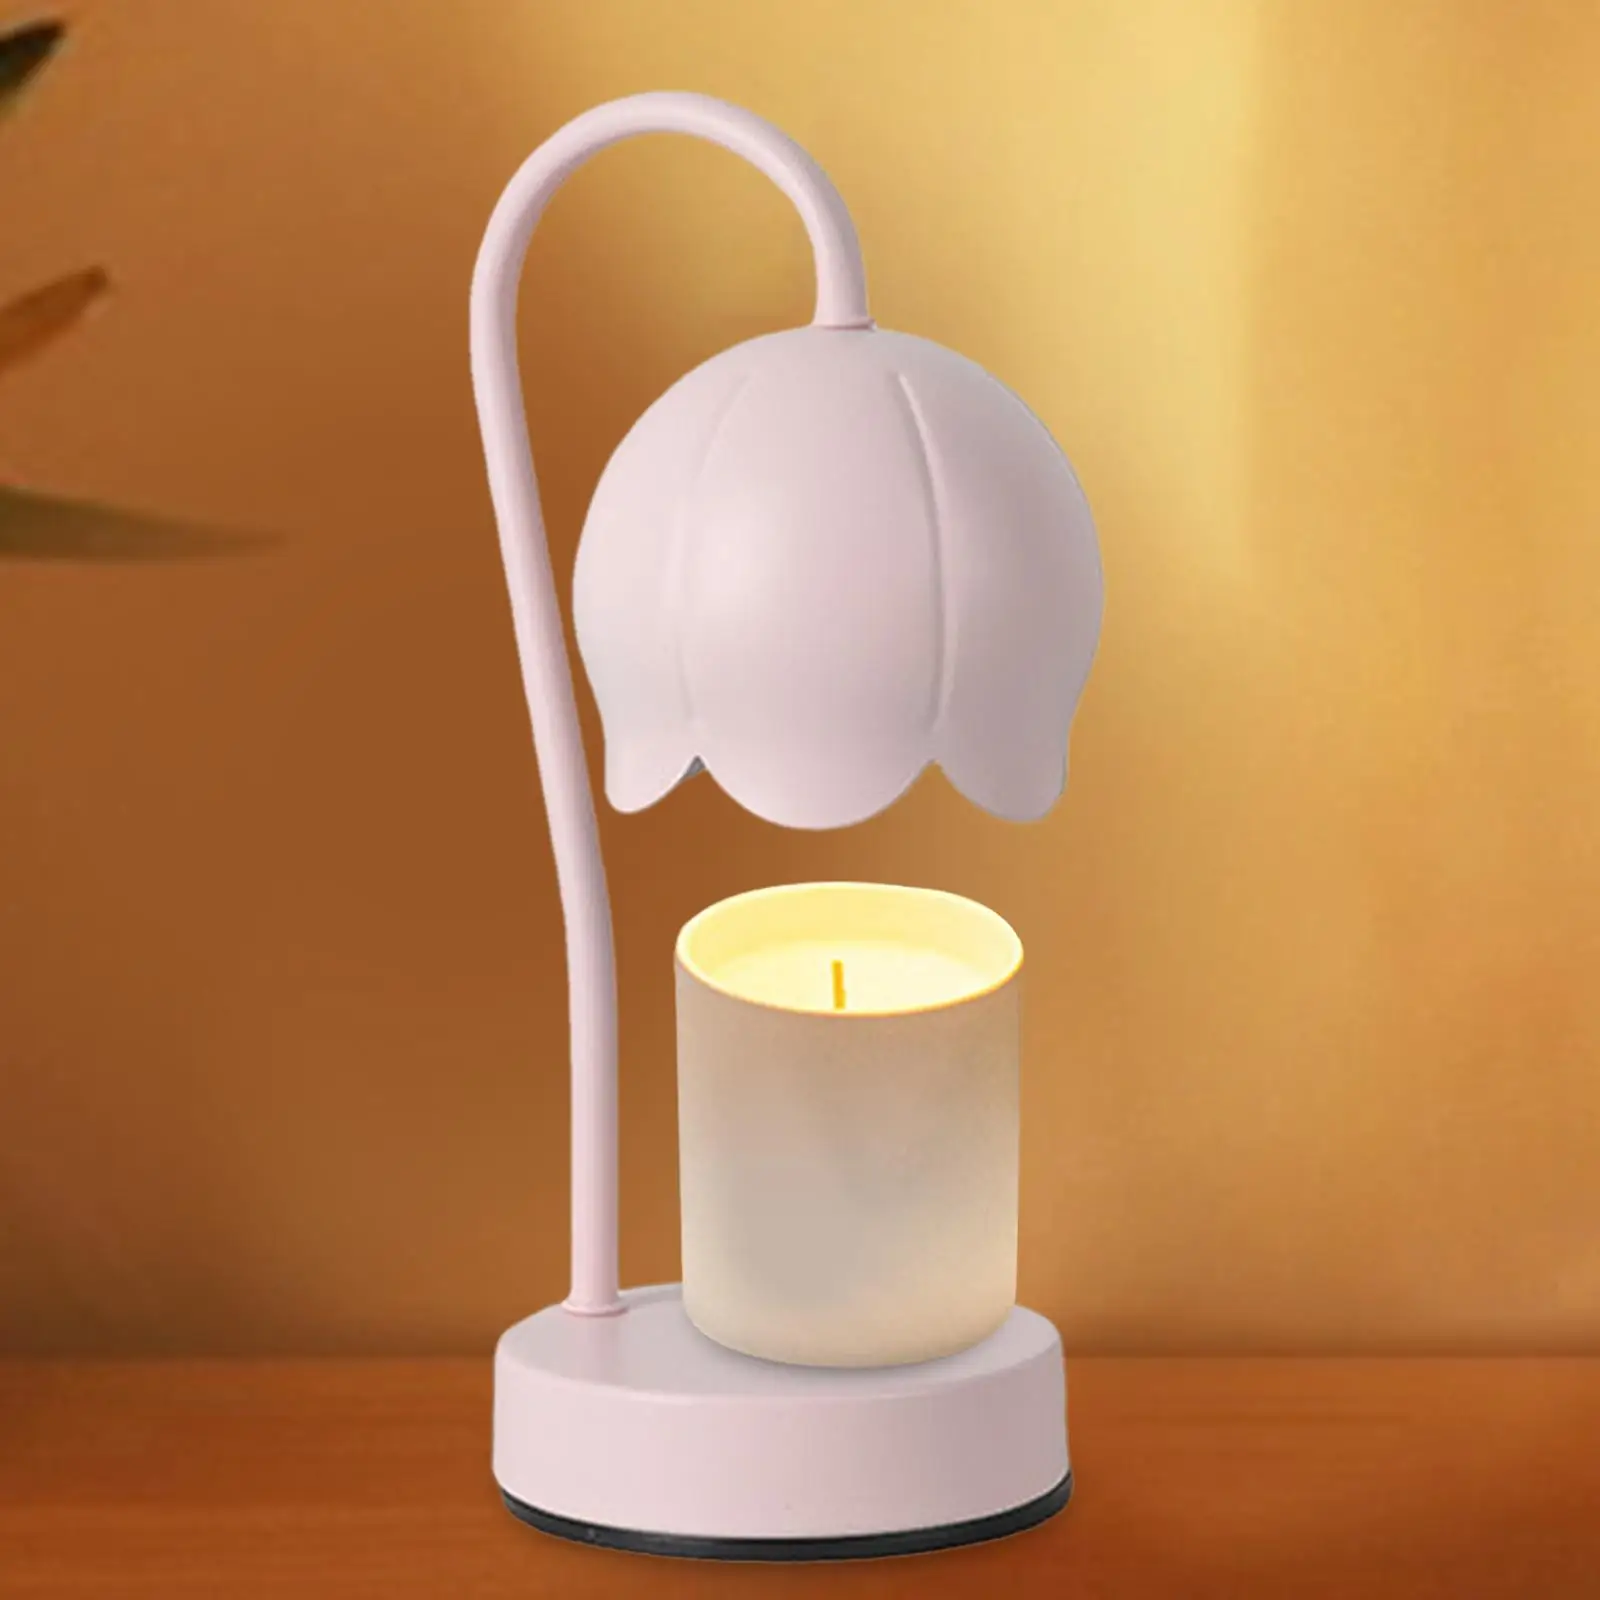 Candle Warmer Lamps Burner Melter Lamp Desk Light Lantern Candle Melting Light for Tabletop Yoga Office Home Decoration Gift